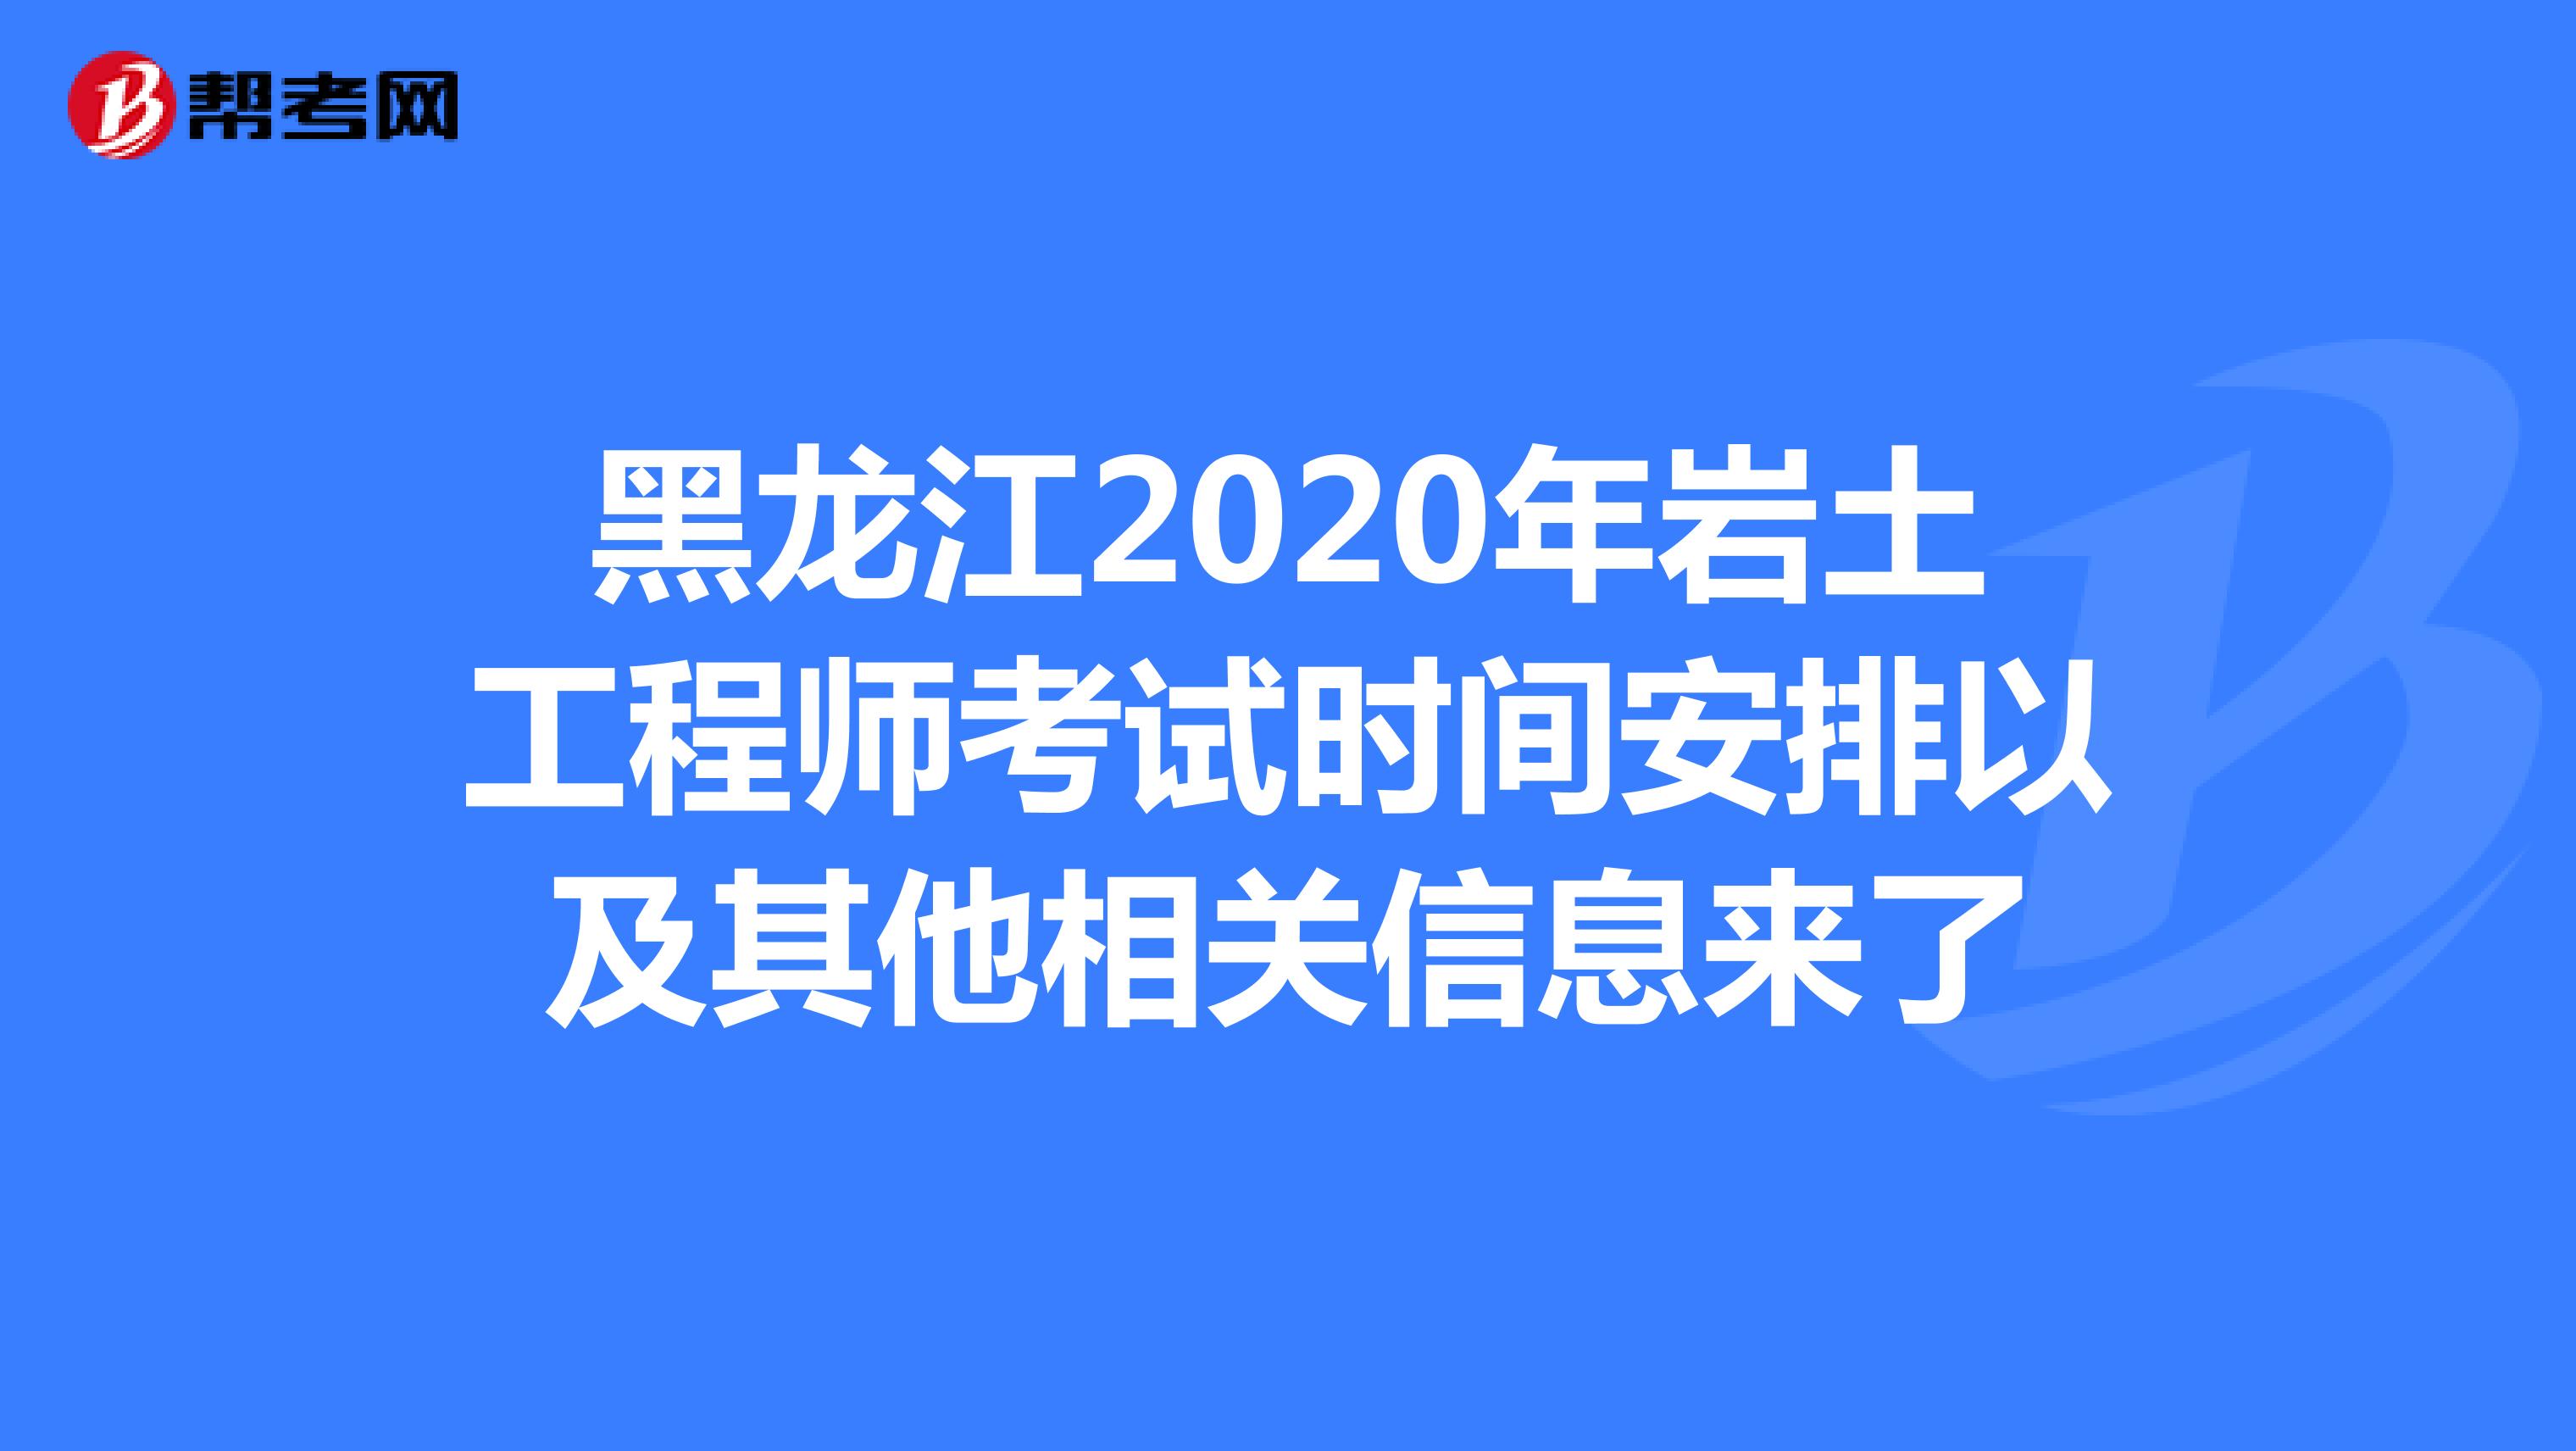 黑龙江2020年岩土工程师考试时间安排以及其他相关信息来了